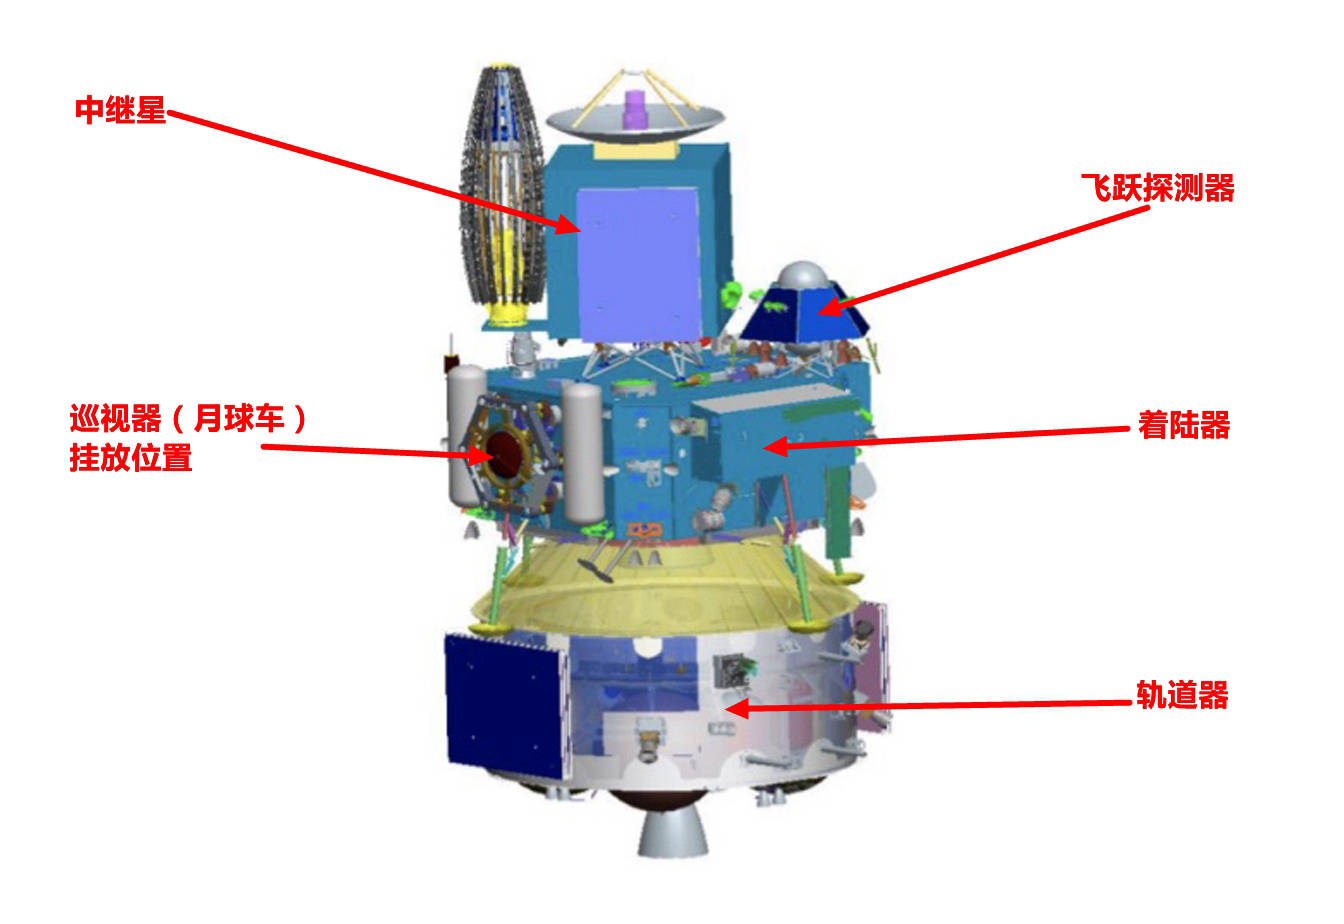 嫦娥六号任务进展顺利 计划2024年前后发射-荆楚网-湖北日报网